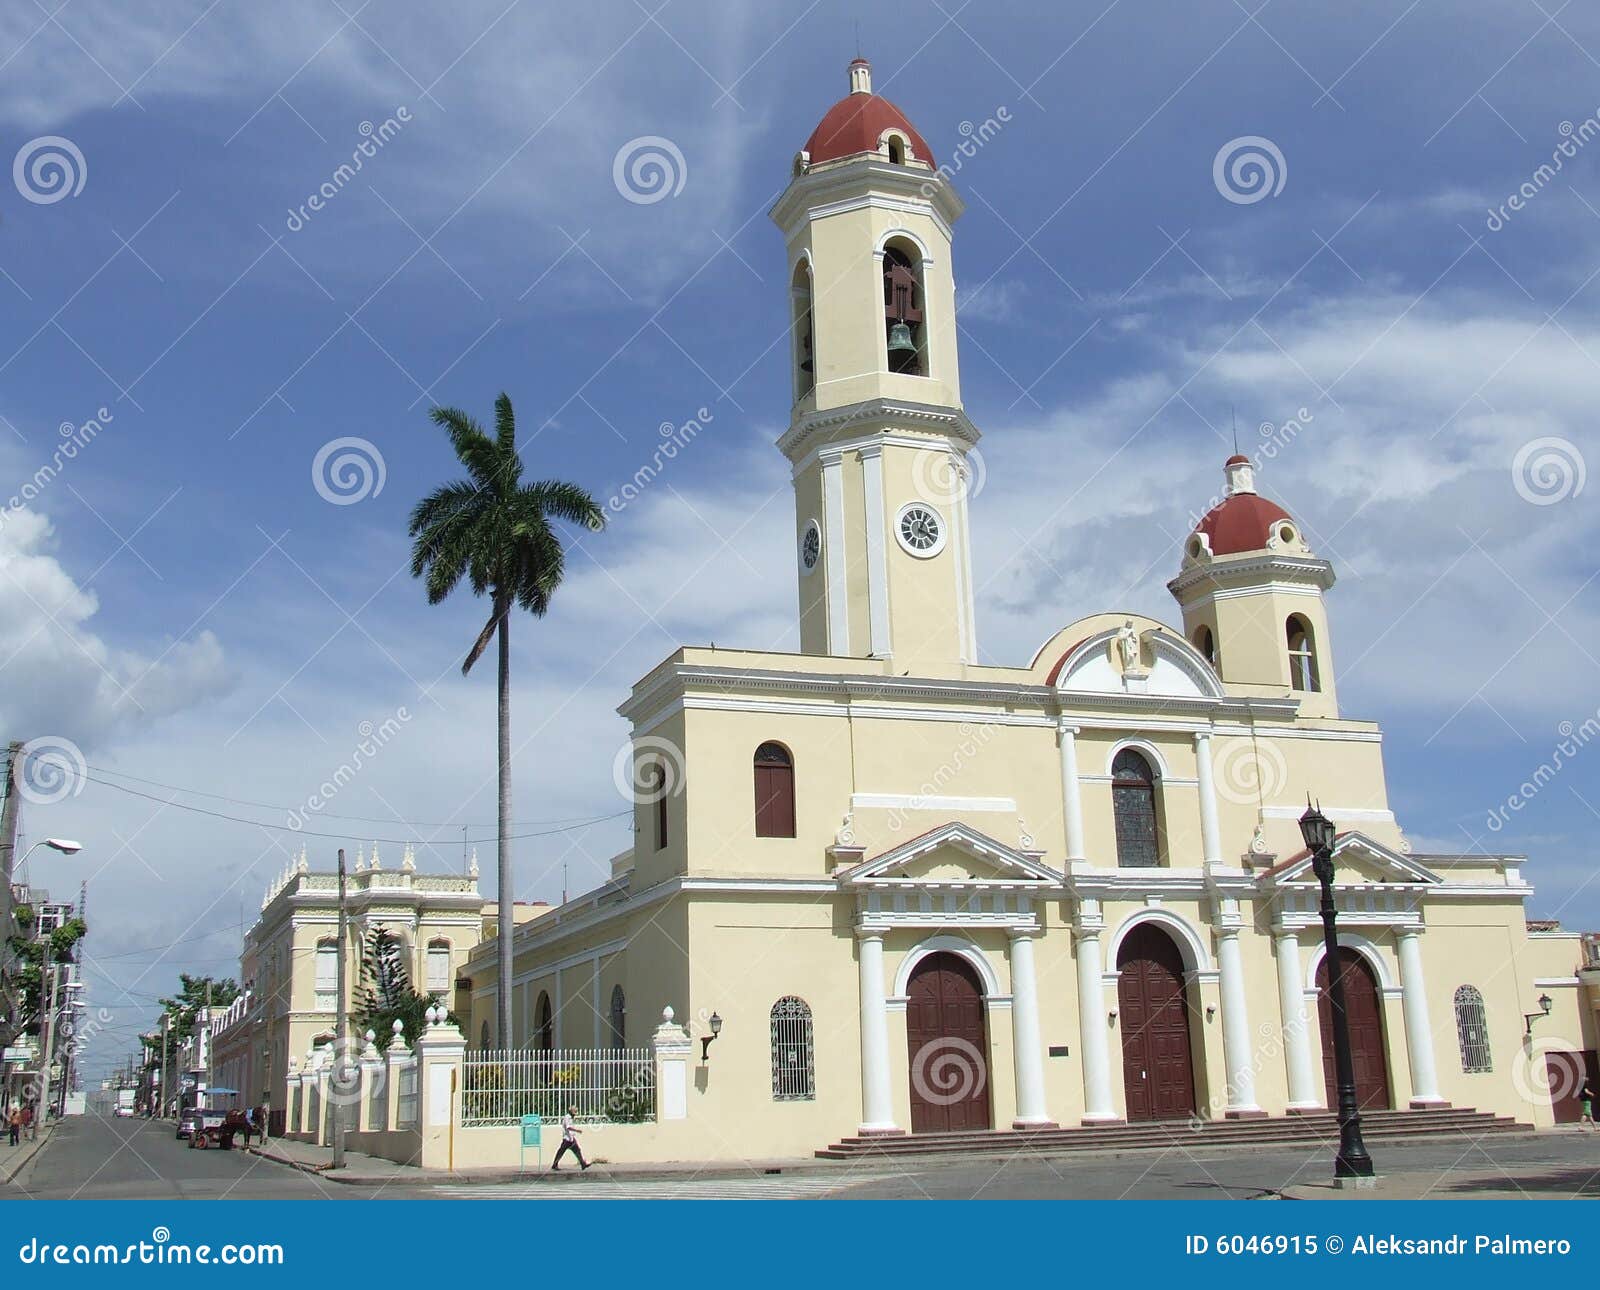 old parish church, in cienfuegos